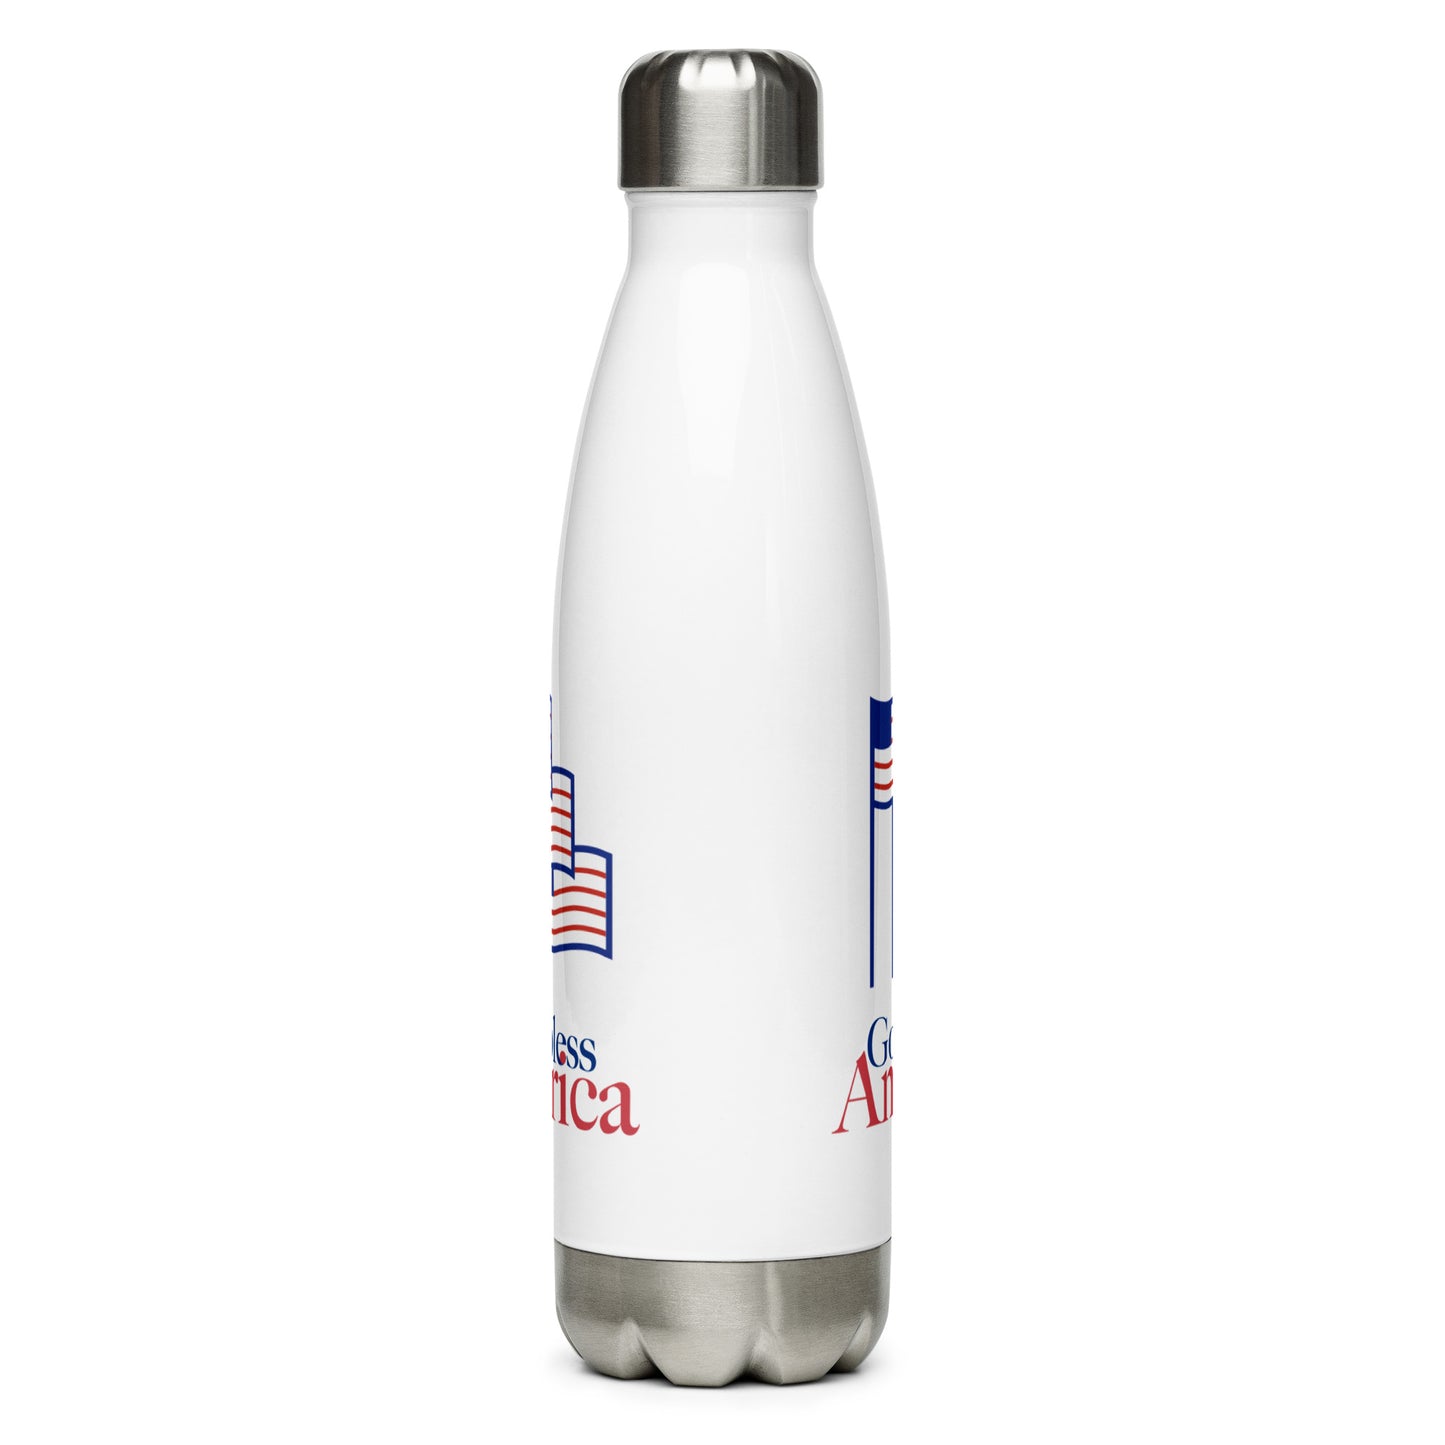 Patriotic Stainless Steel Water Bottle